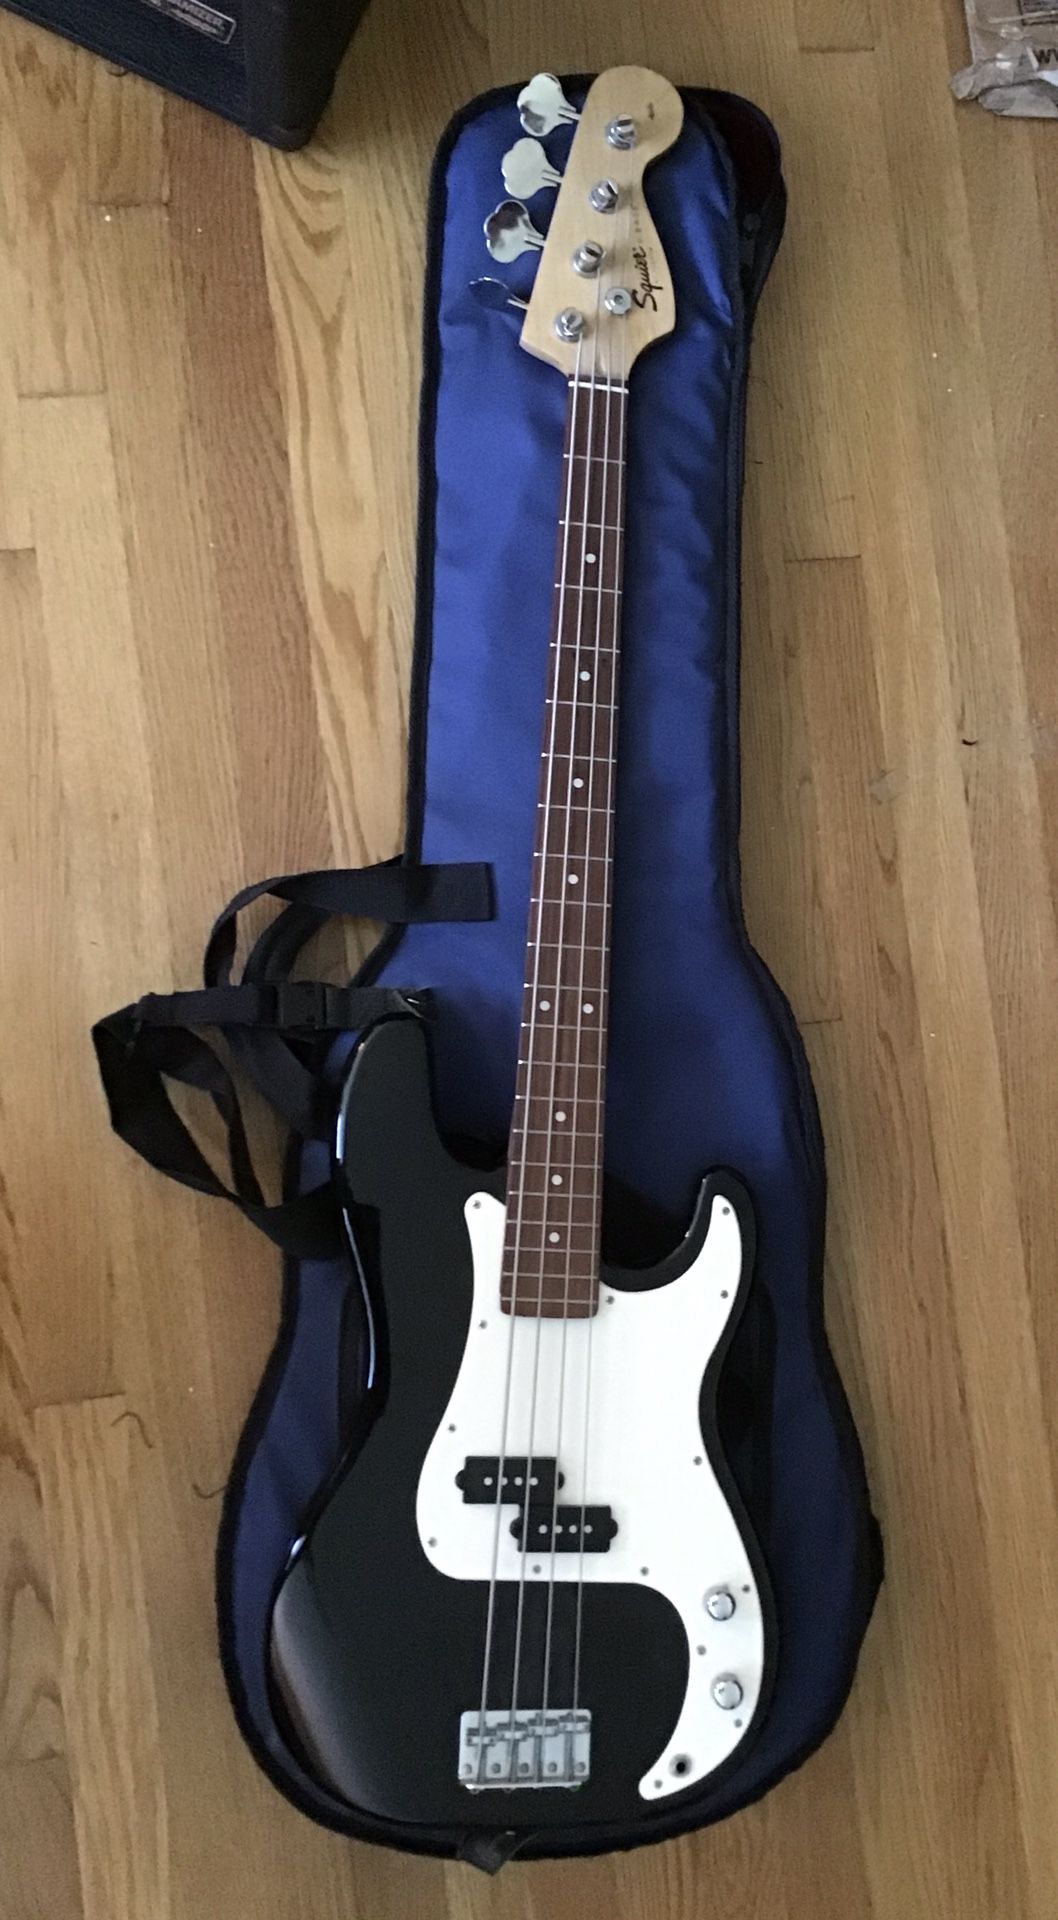 Fender Squire Bass and Behringer Ultrabass BX600 Amplifier